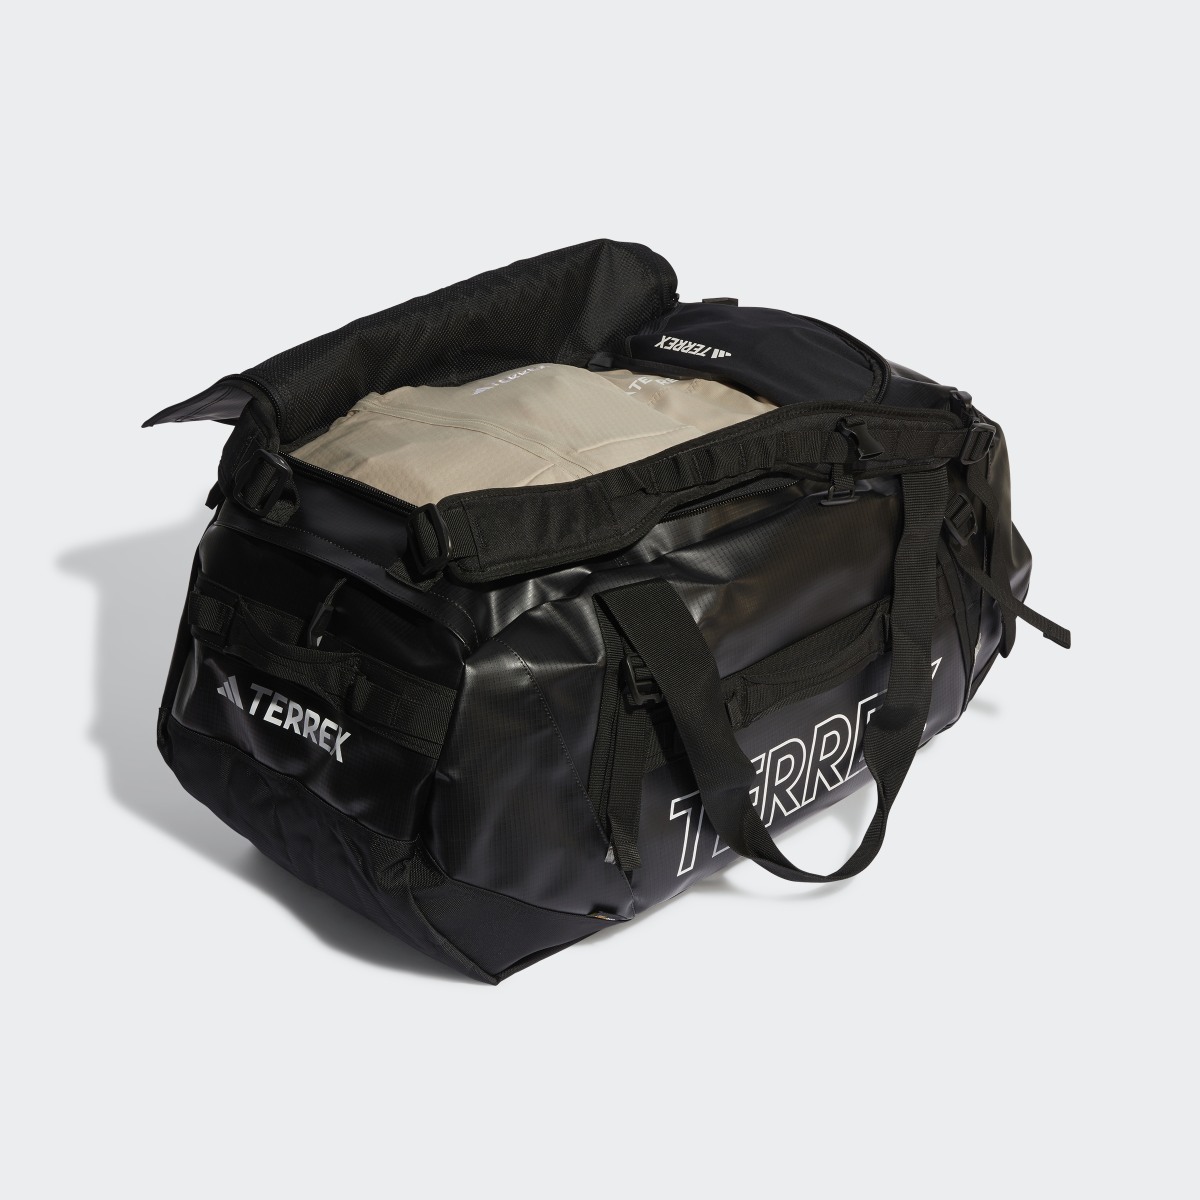 Adidas Terrex RAIN.RDY Expedition Duffel Bag Large - 100L. 5